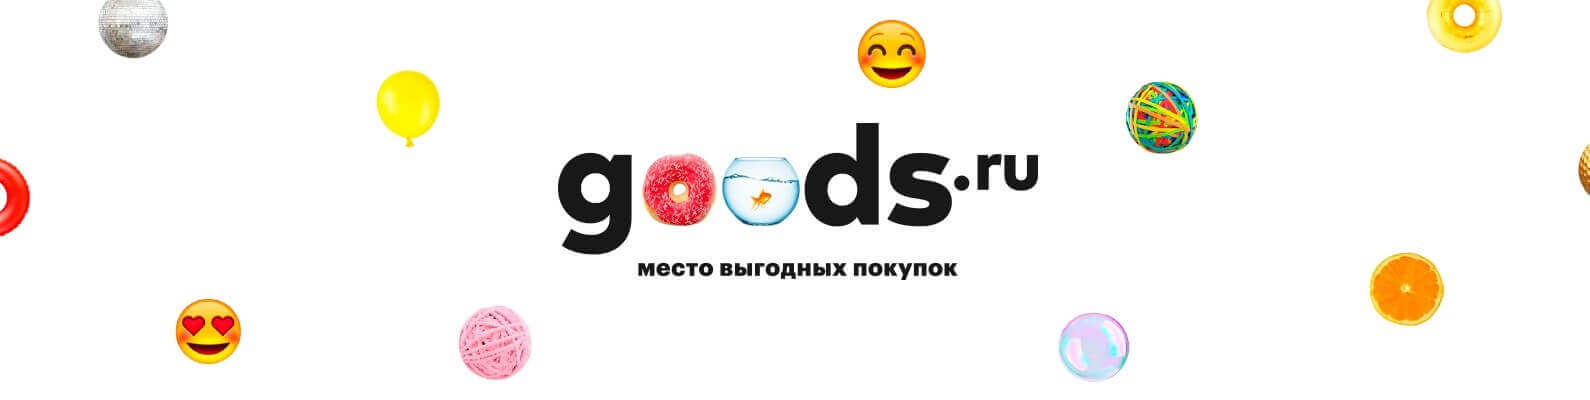 Goods Ru Интернет Магазин Каталог Москва